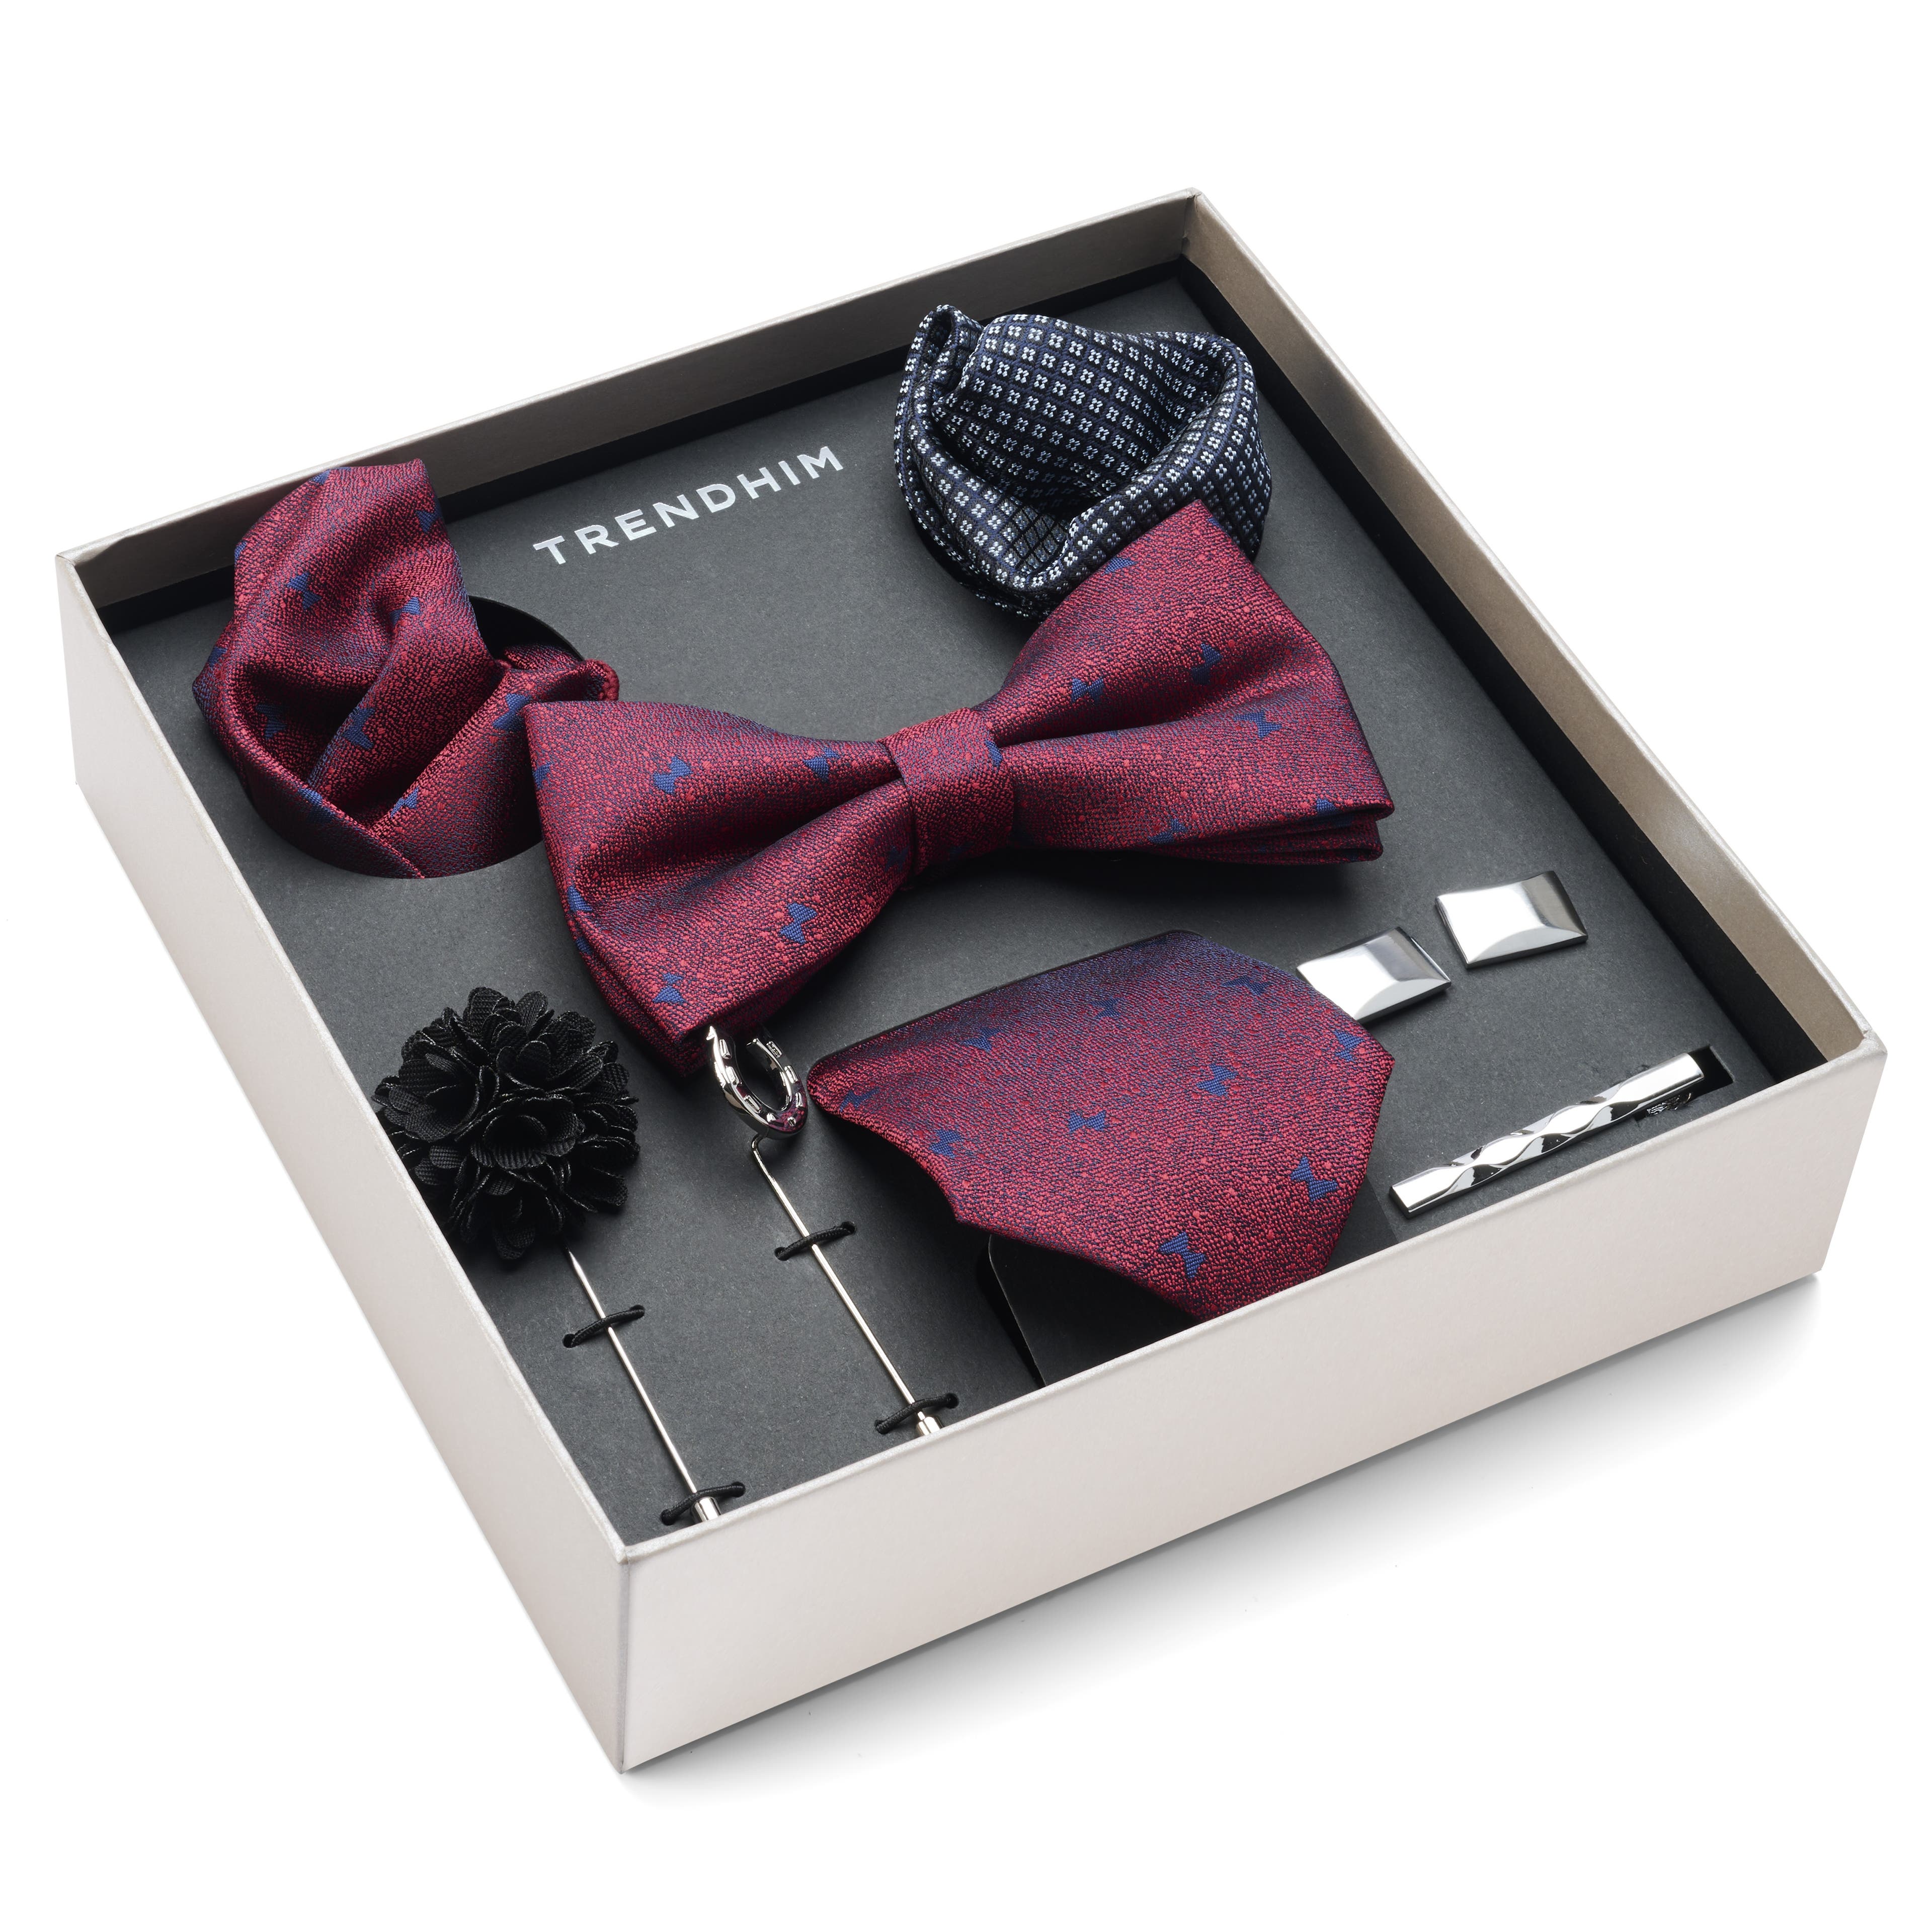 Suit Accessory Gift Box | Crimson & Royal Blue Bow Motif Set